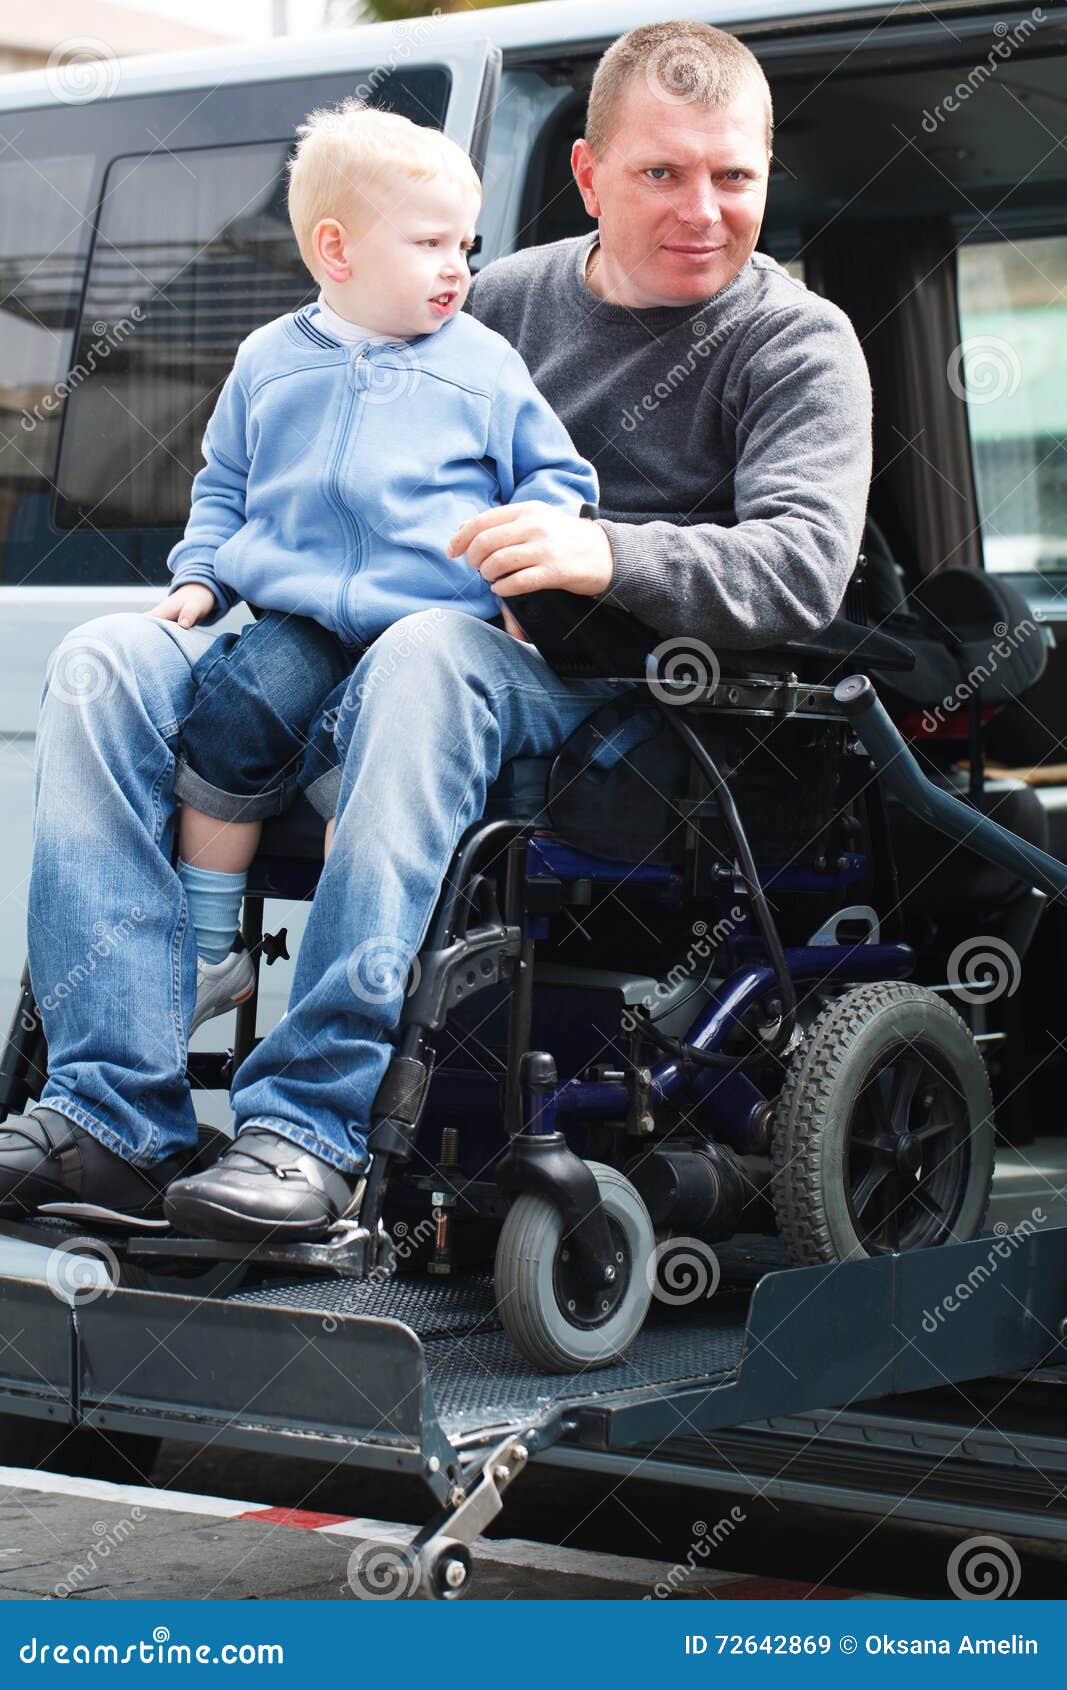 sitio podar masculino Hombres Discapacitados Con El Hijo En La Elevación De Silla De Ruedas  Imagen de archivo - Imagen de lifestyle, amistad: 72642869